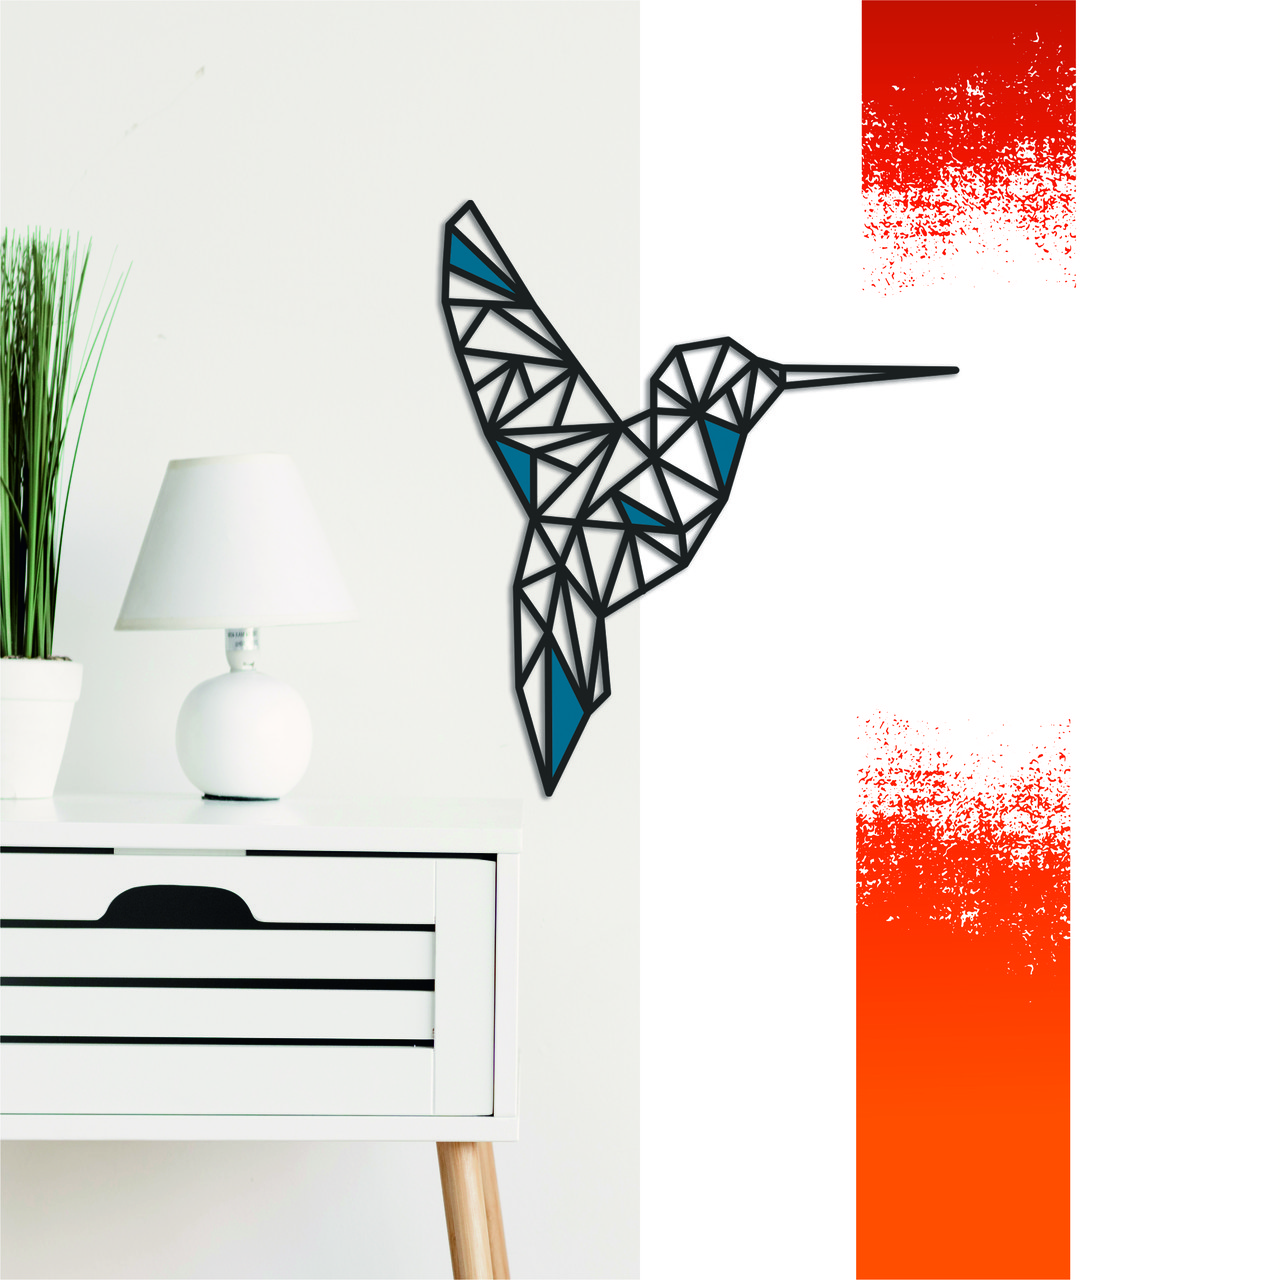 

Декоративная деревянная картина абстрактная модульная полигональная Панно Colibri / Колибри с вставками Manific Decor 44*50 см